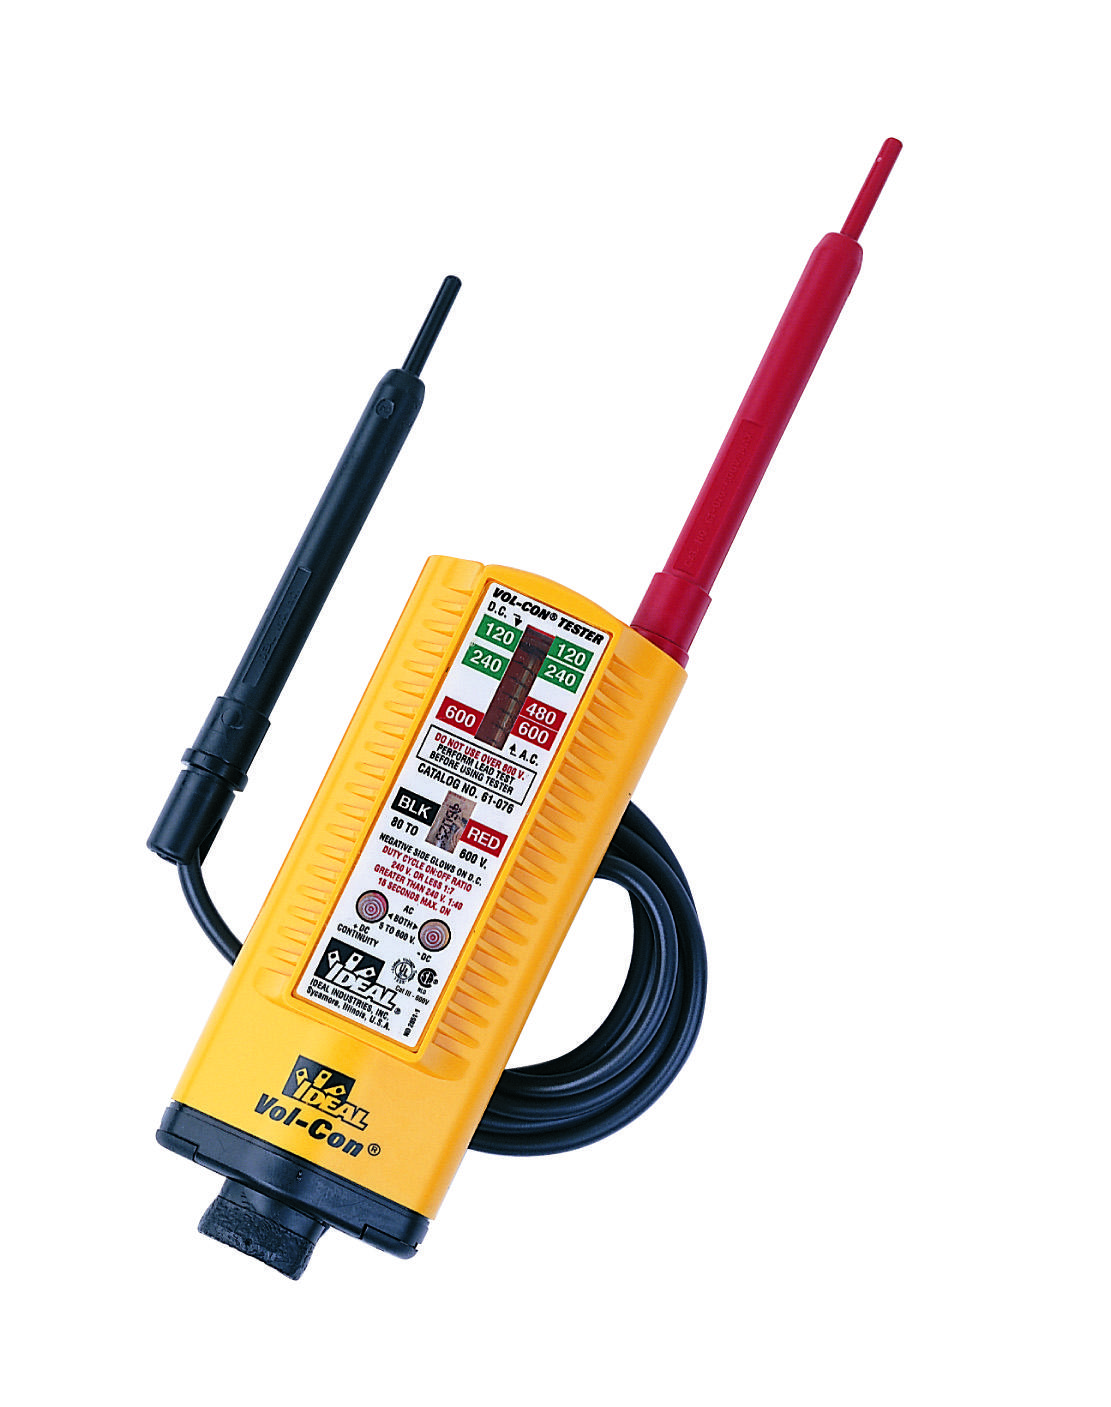 61076 - Vol-Con Solenoid Voltage Tester - Ideal